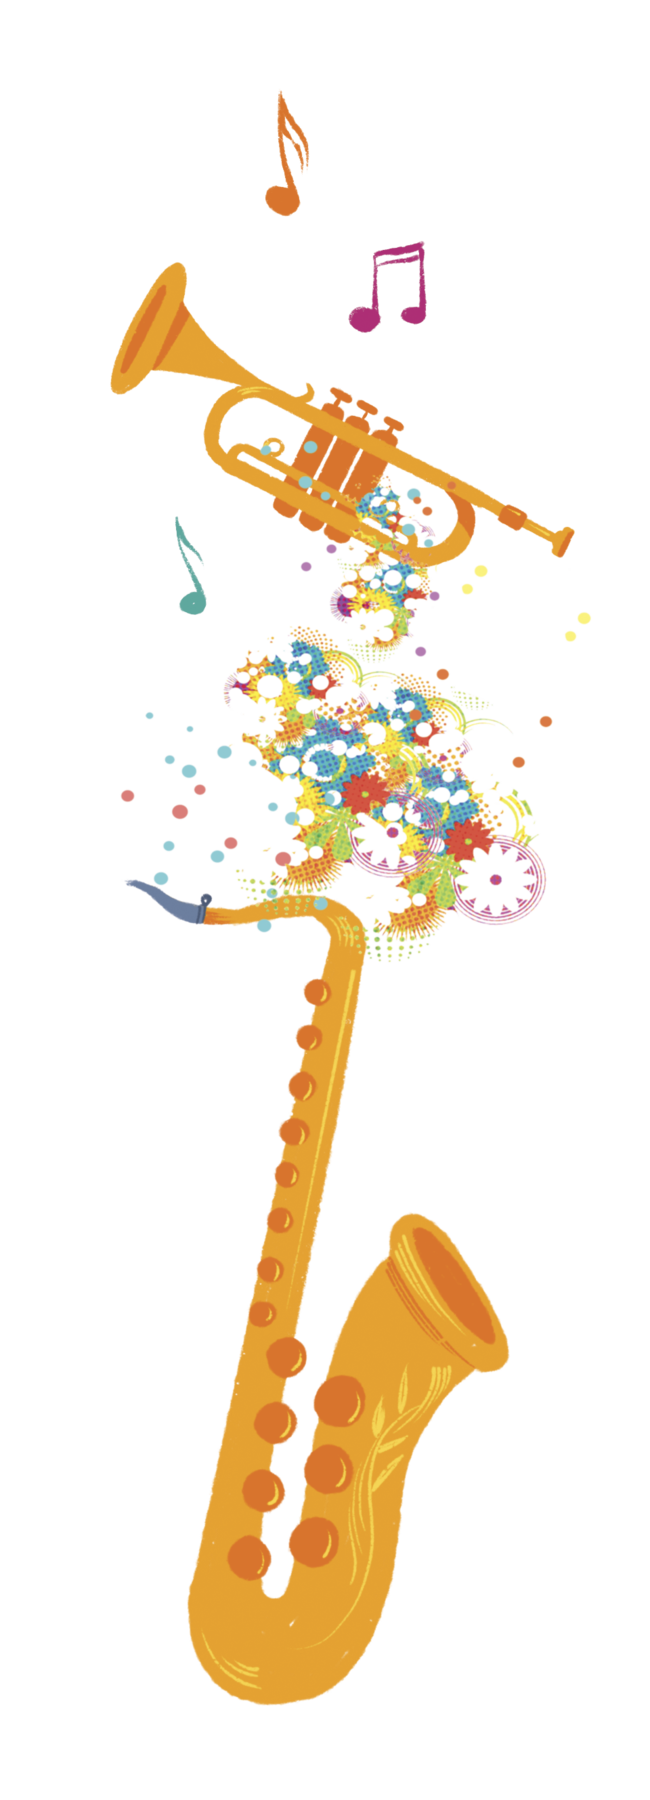 Ilustração. Saxofone e trompete amarelo e laranja. Entre eles, ornamentos florais em diversas cores, como azul, verde e vermelho, acima e um pouco à esquerda notas musicais em laranja, rosa e verde.